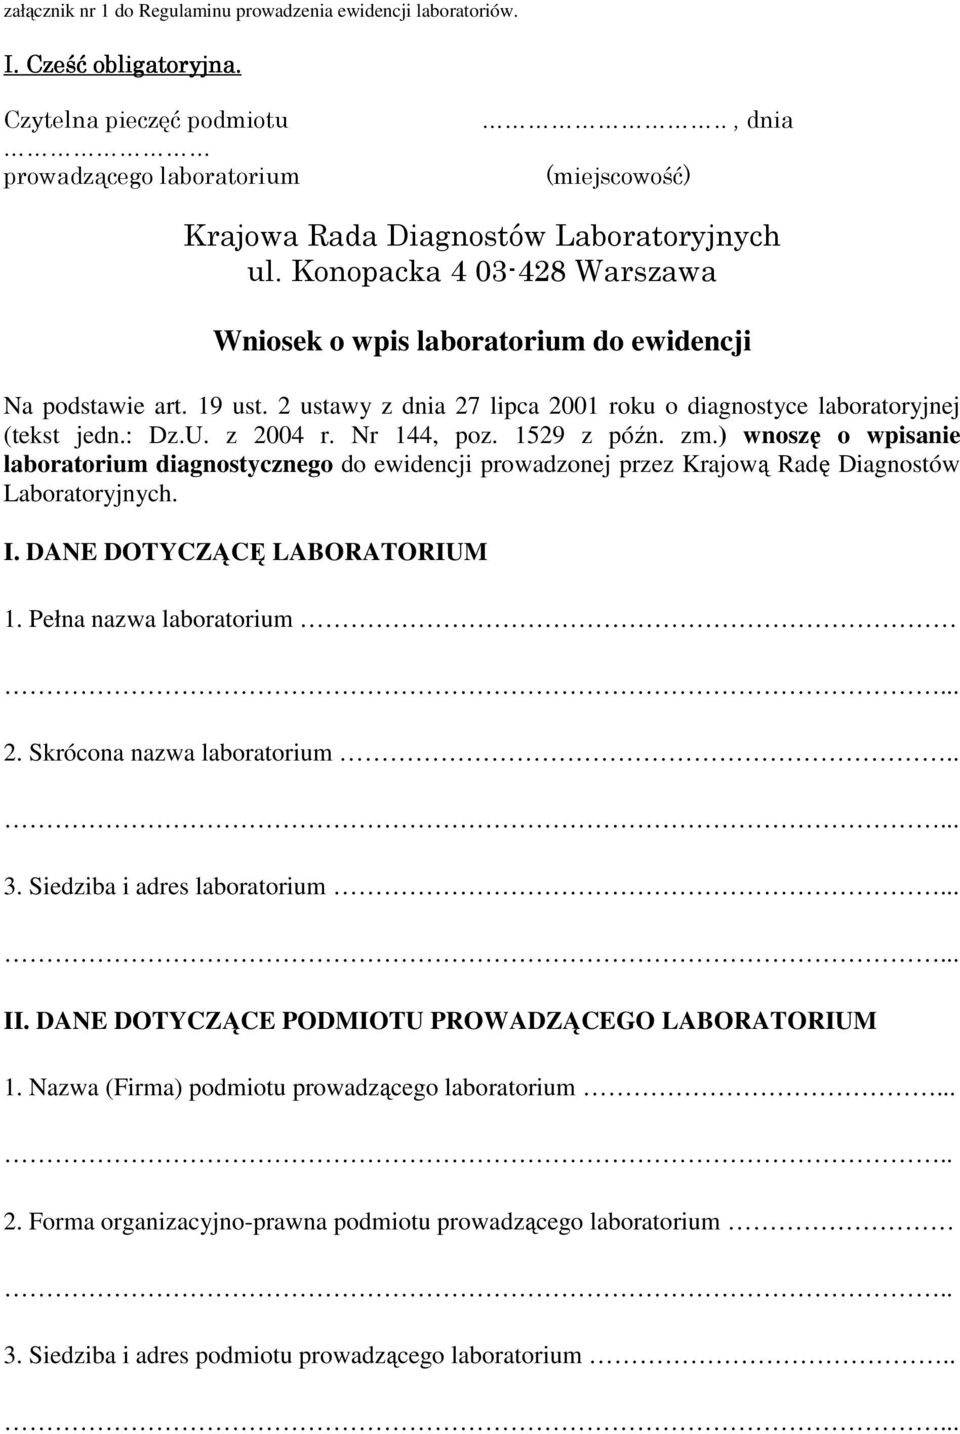 2 ustawy z dnia 27 lipca 2001 roku o diagnostyce laboratoryjnej (tekst jedn.: Dz.U. z 2004 r. Nr 144, poz. 1529 z późn. zm.